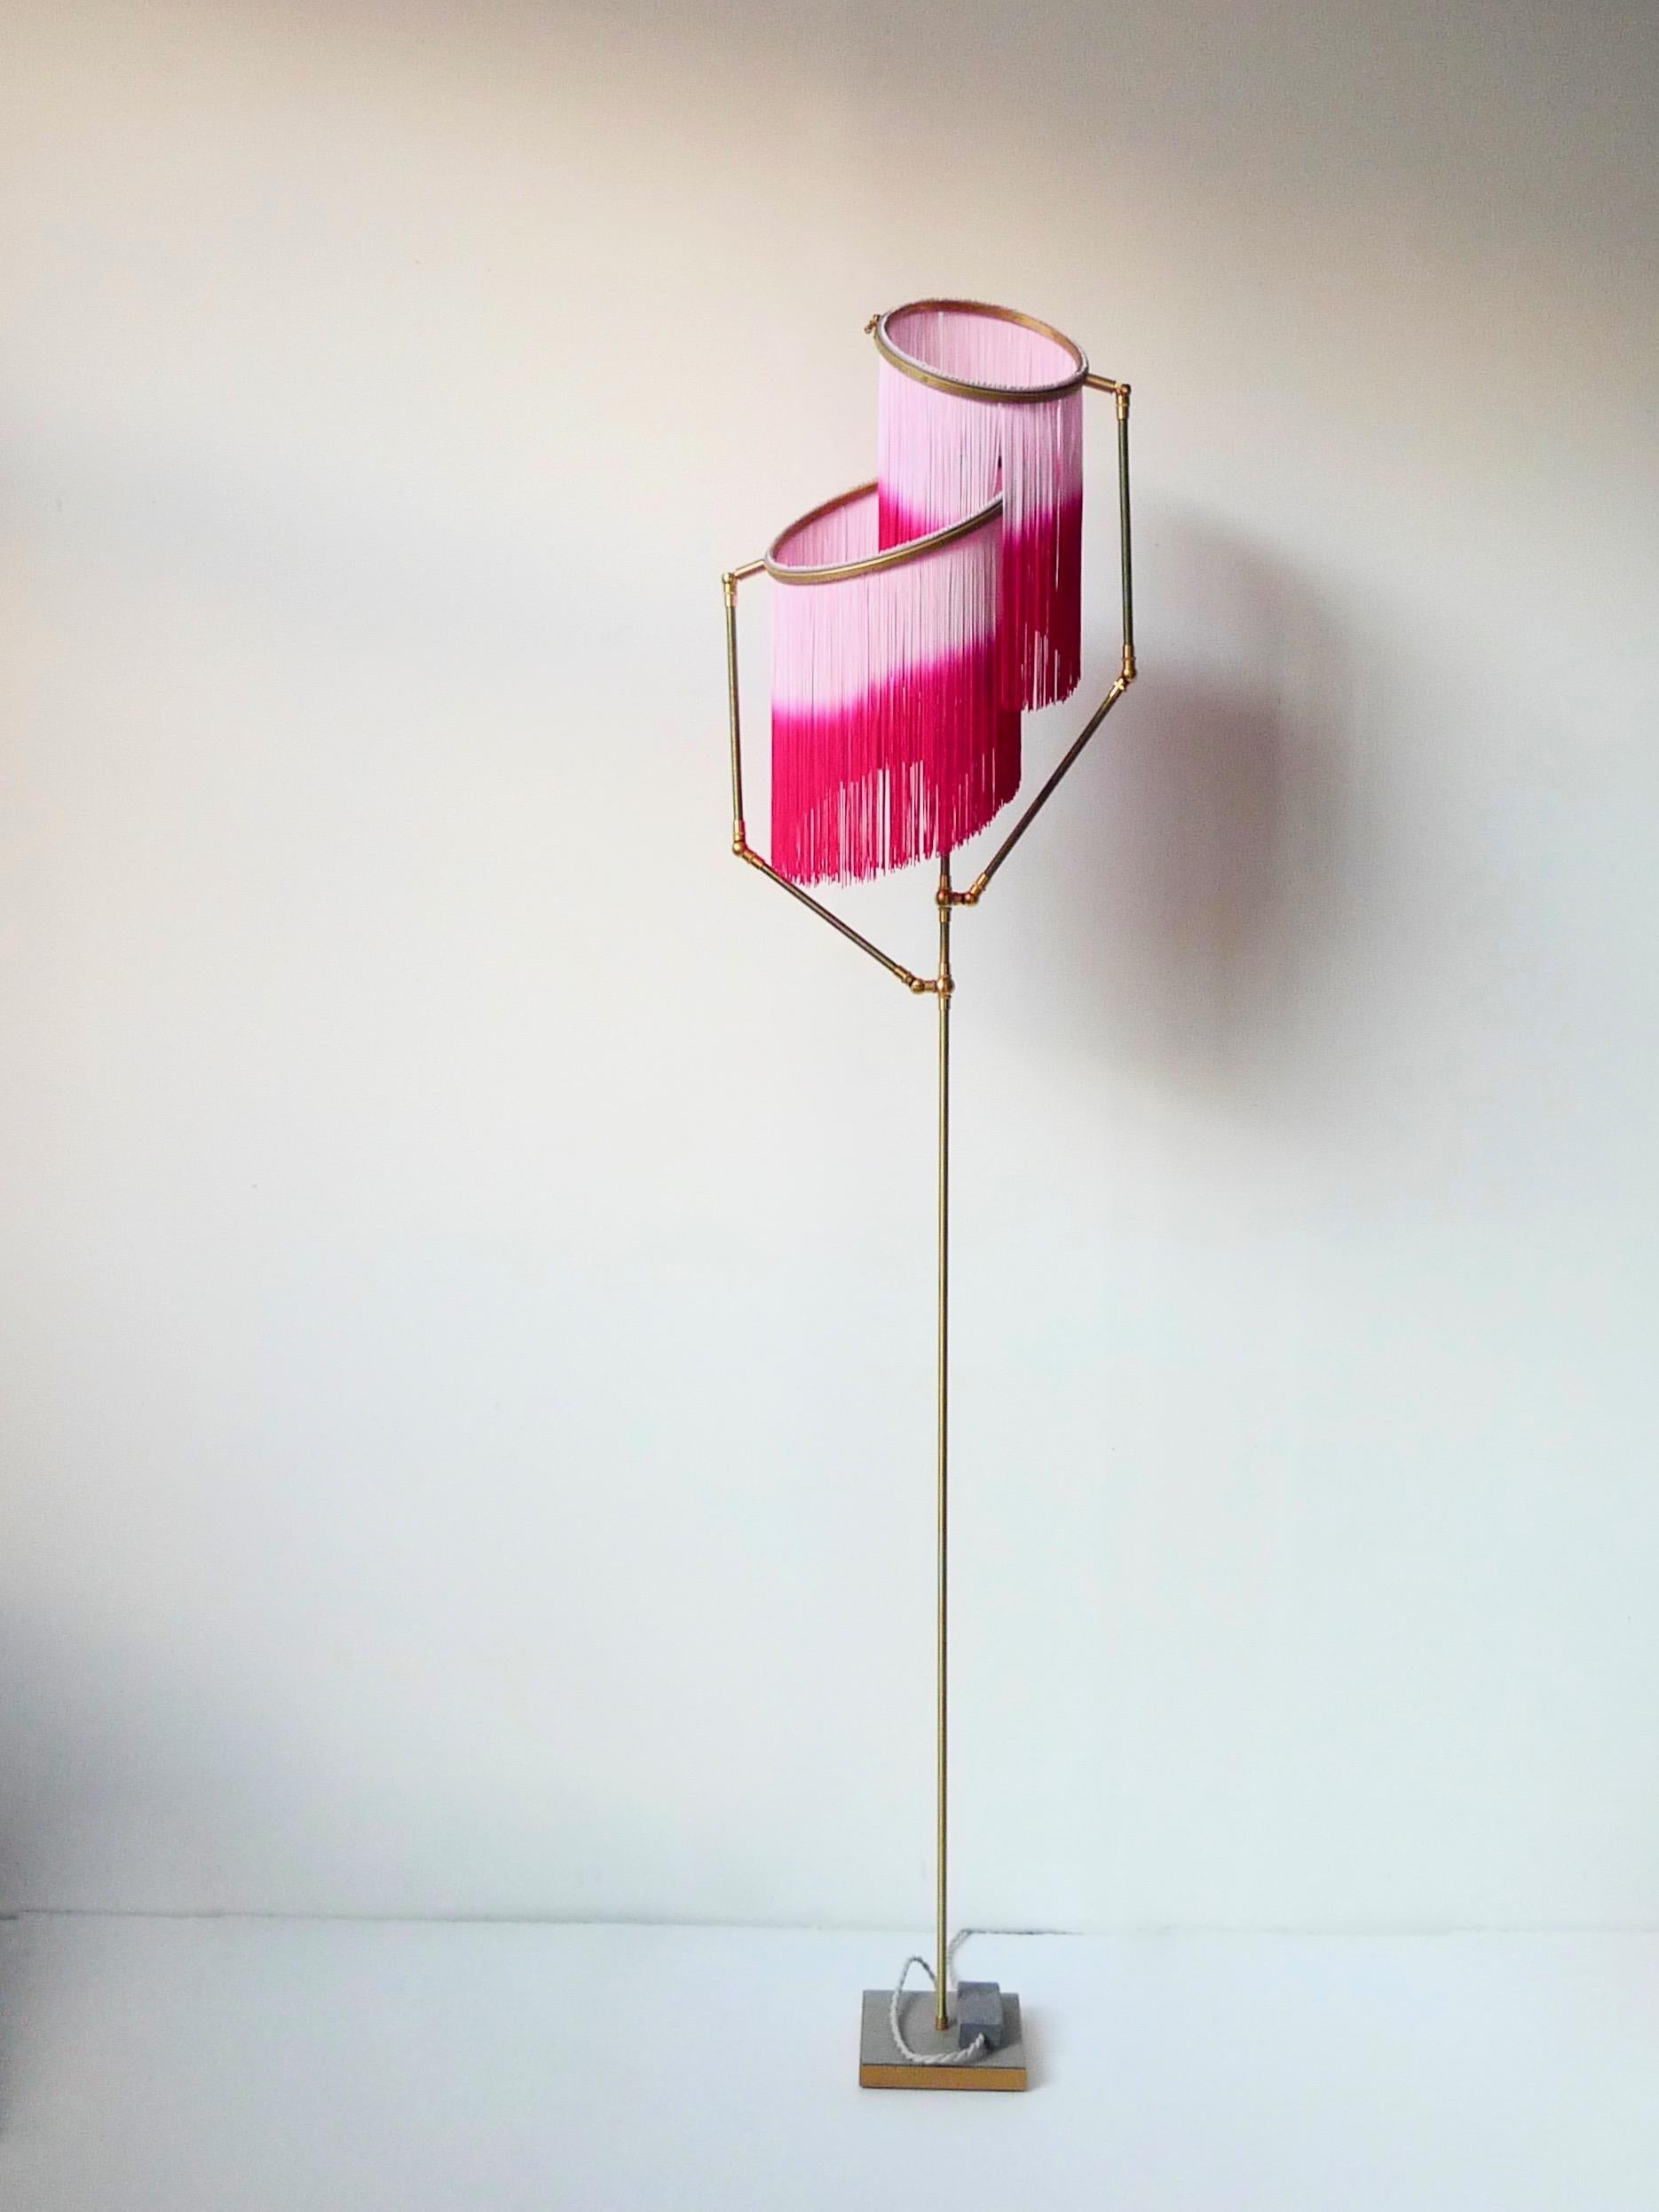 Lampadaire Pink charme, Sander Bottinga

Dimensions : H 153 x L 38 x P 25 cm : H 153 x L 38 x P 25 cm
Fabriqué à la main en laiton, cuir, bois et franges colorées en viscose.
Les bras mobiles permettent de déplacer les cercles avec franges dans